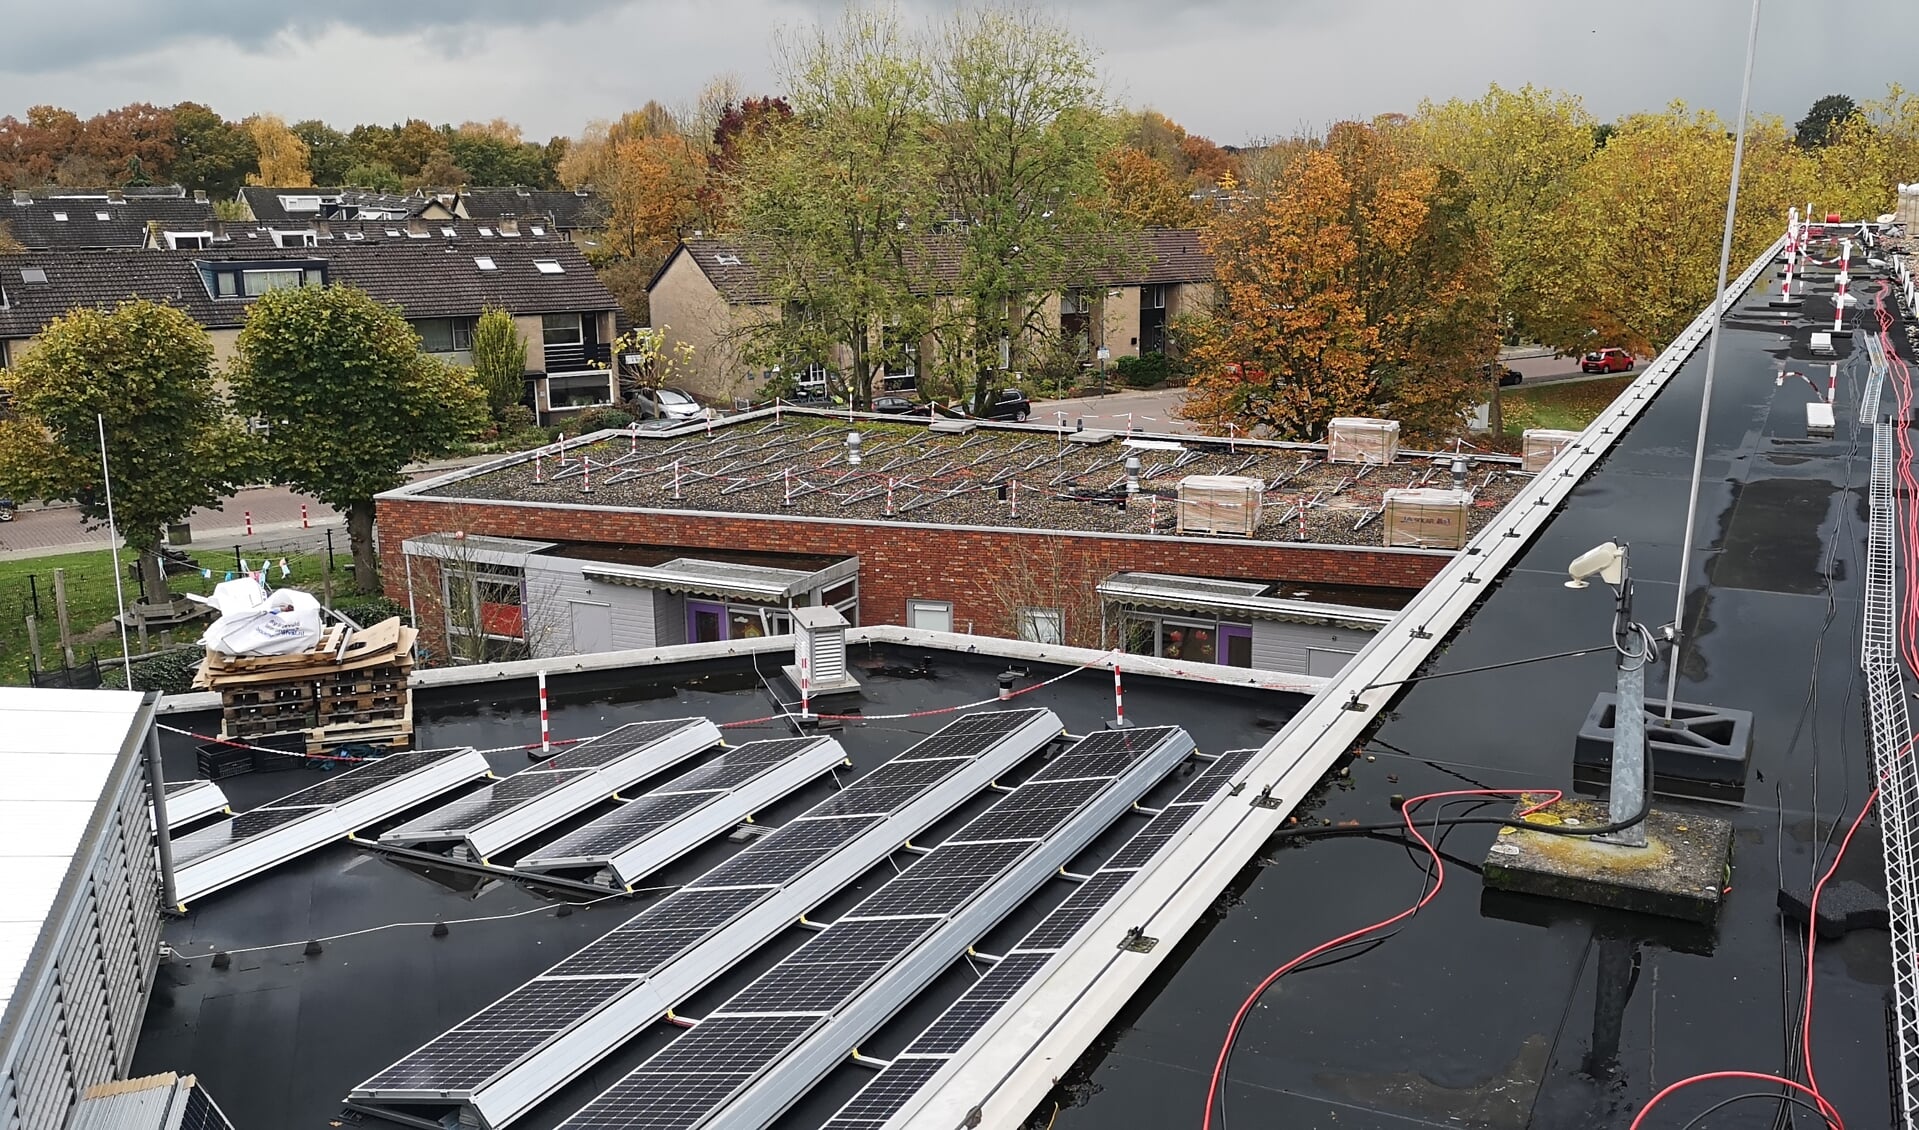 De installatie van de zevenhonderddrie zonnepanelen op de daken van De Binder vordert vlot.